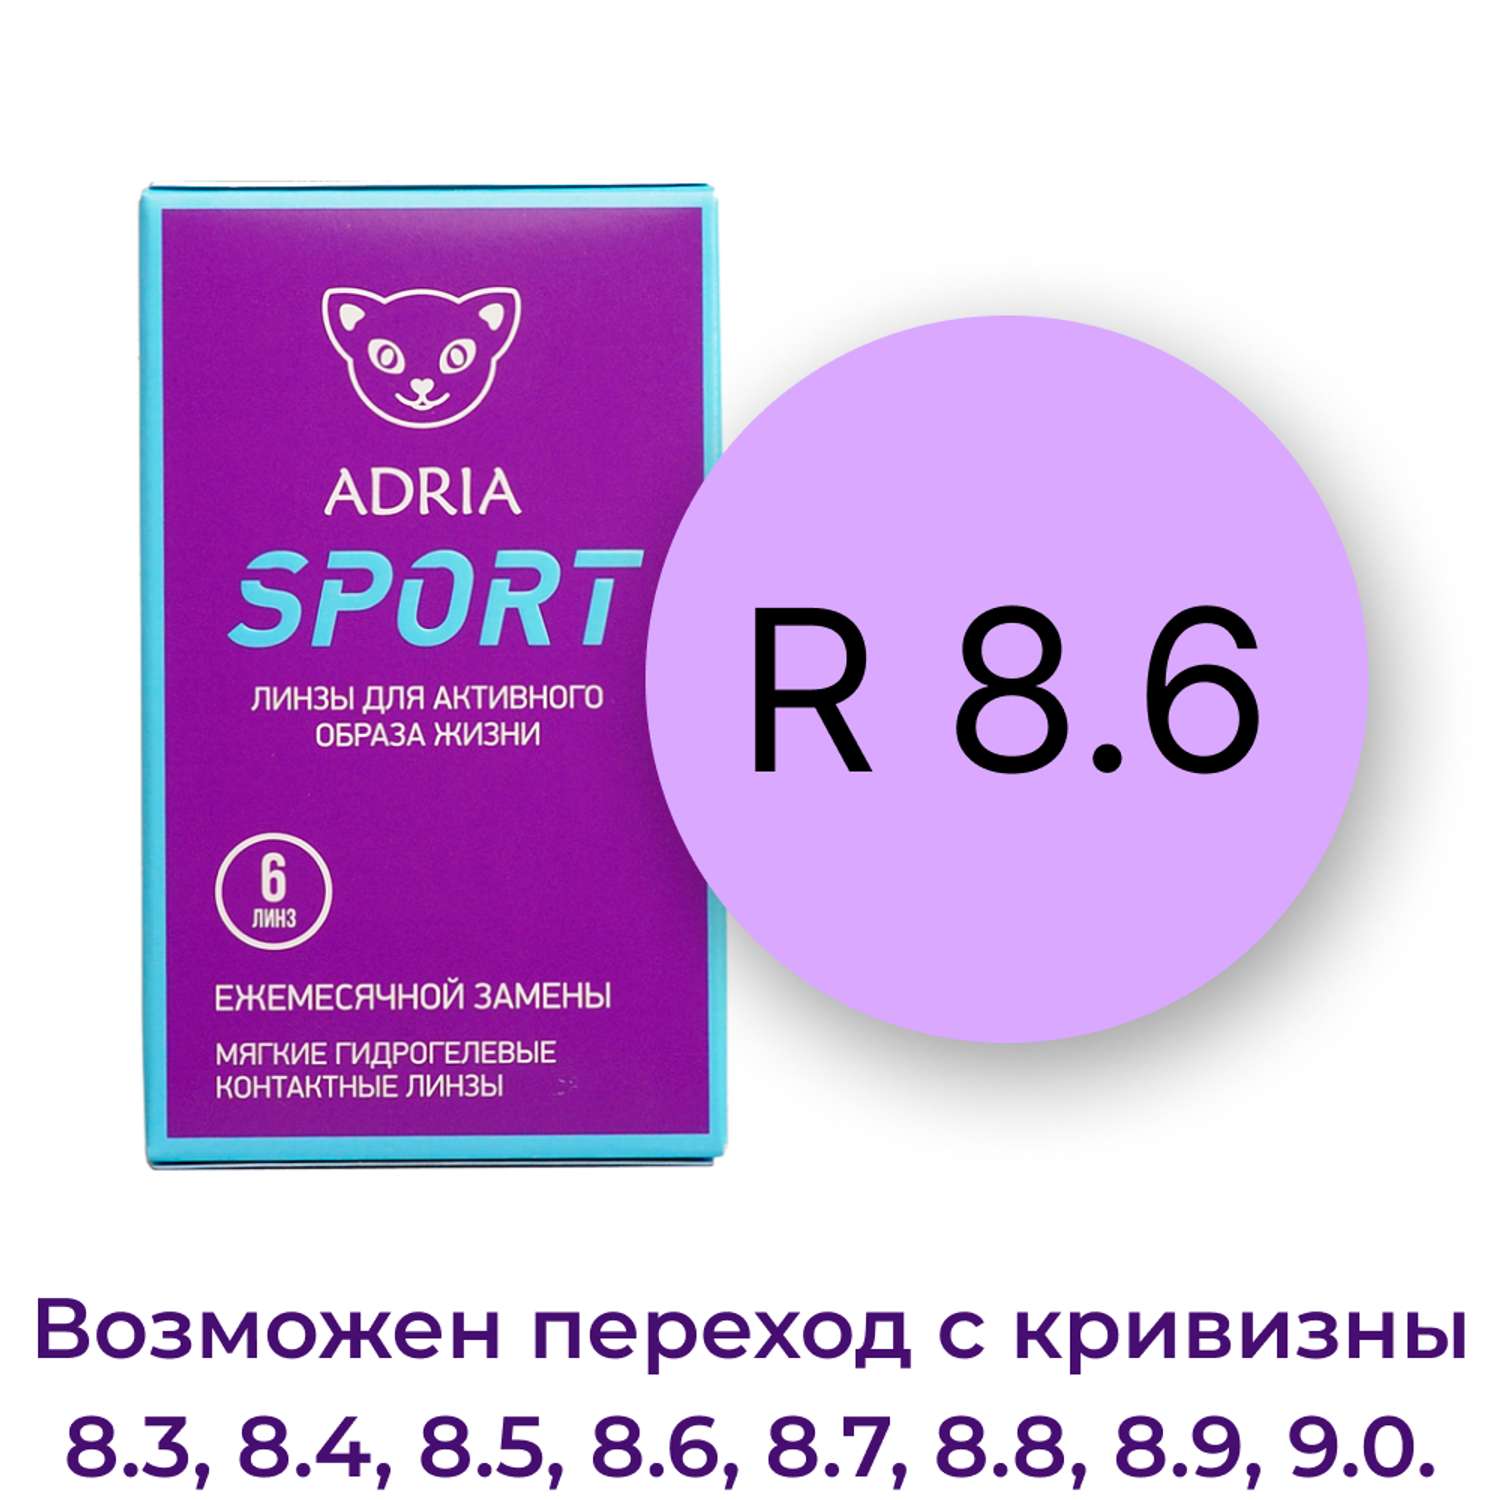 Контактные линзы ADRIA Sport 6 линз R 8.6 -6.00 - фото 3